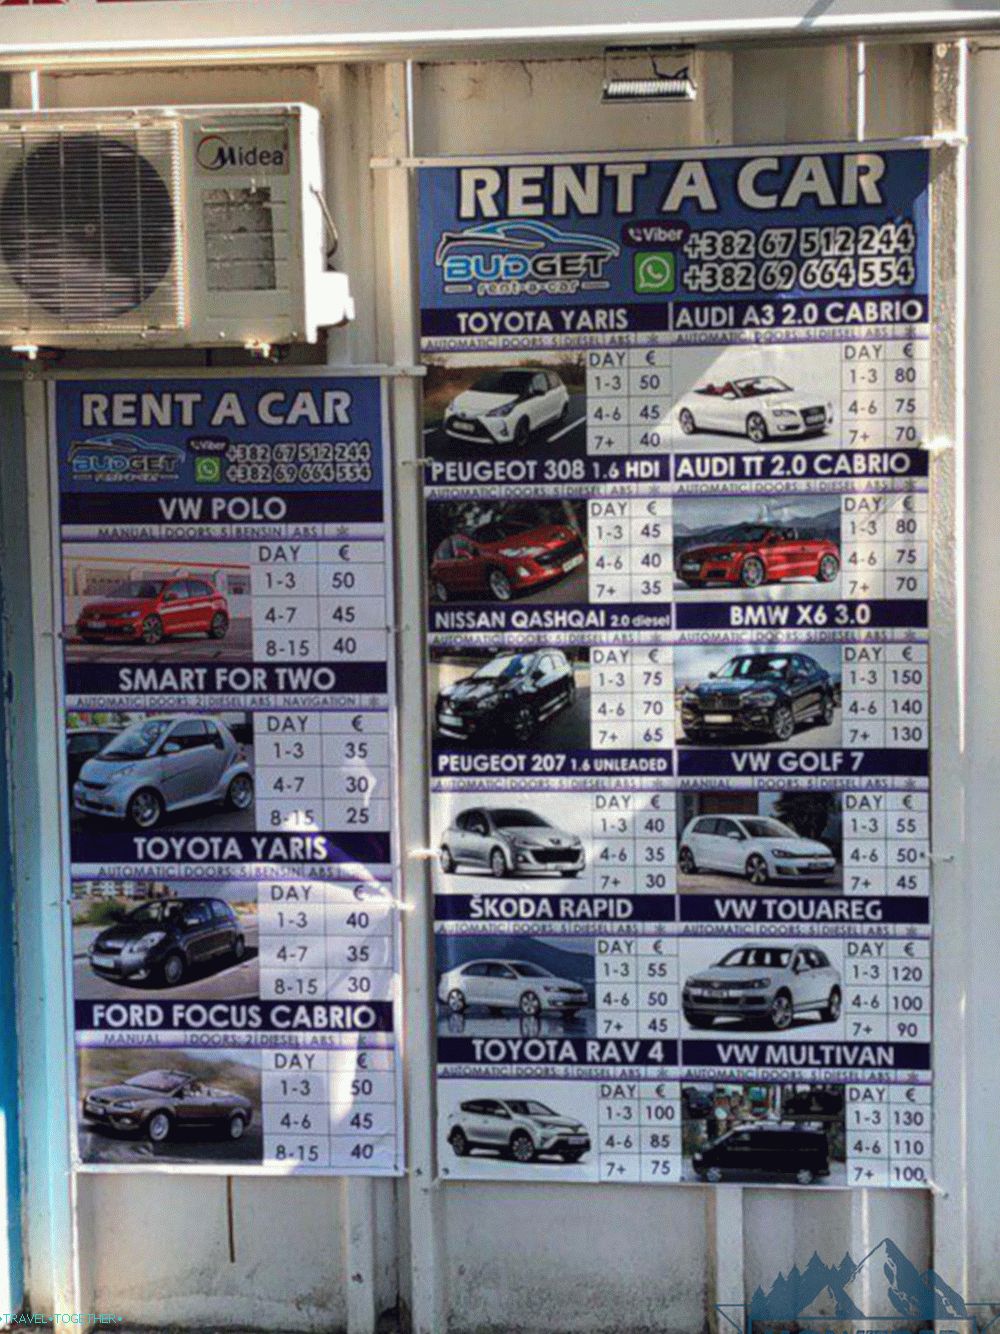 Ceny za pronájem auta